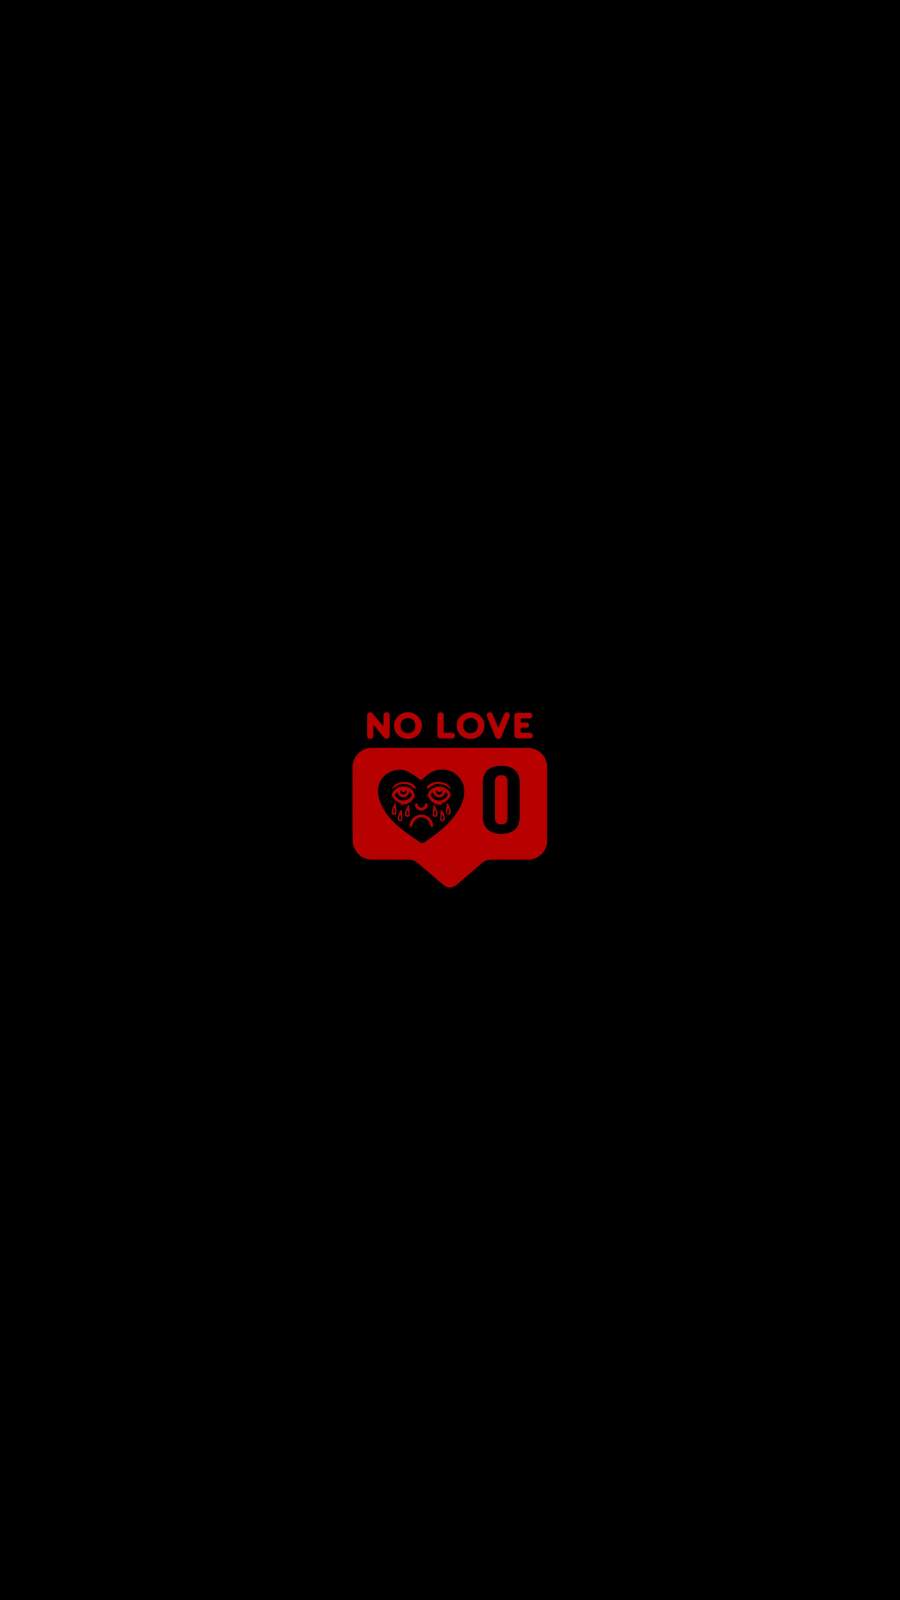 No love background